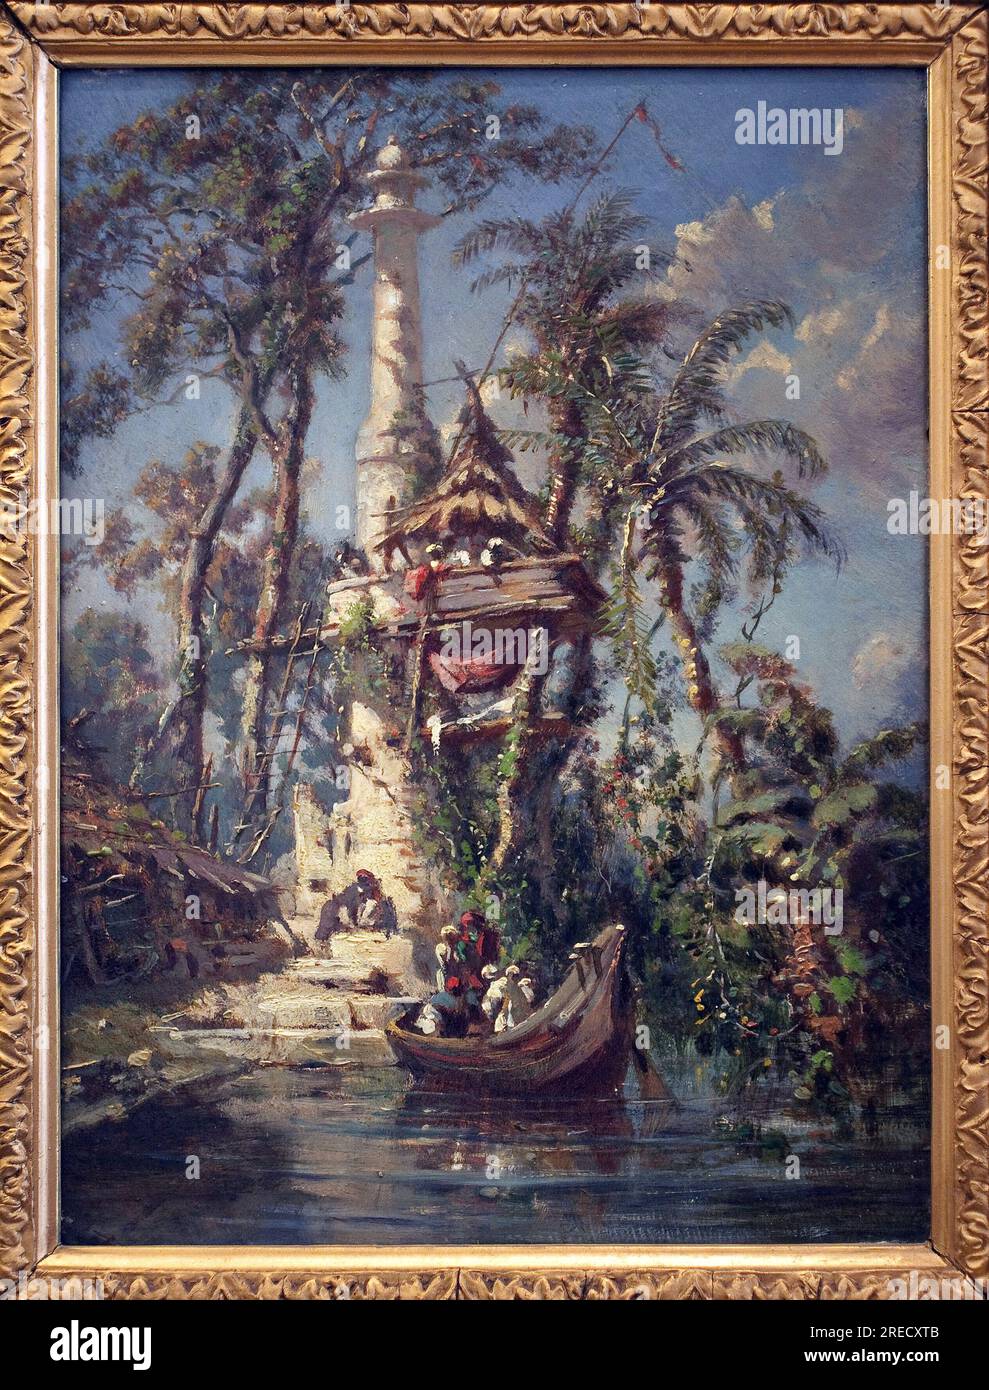 Observatoire au bord de l'Hoogly (Bengale, Inde). Peinture de Auguste Borget (1808-1877), huile sur bois d'acajou, 19e siecle. Musée des Beaux Arts de Chateauroux. Banque D'Images